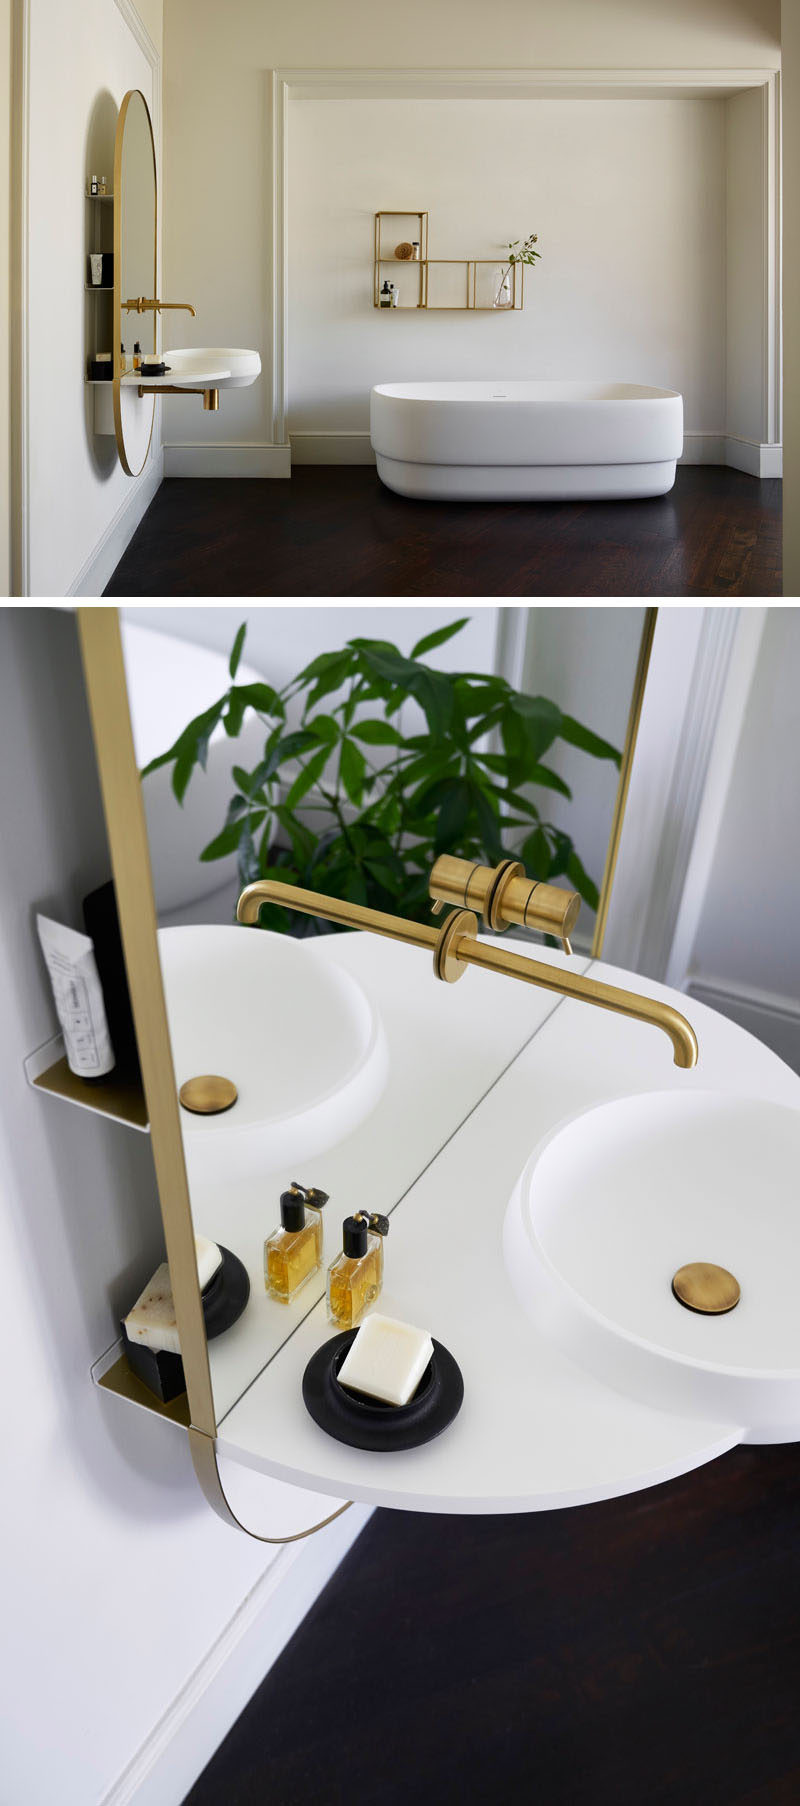 Studio Mut Design đã tạo ra ARCO, một món đồ nội thất phòng tắm đa chức năng có gương tích hợp, vòi, chậu rửa và hệ thống giá đỡ ẩn sau lớp kính.  # Phòng tắm # Phòng tắmMirror # Phòng tắm hiện đại